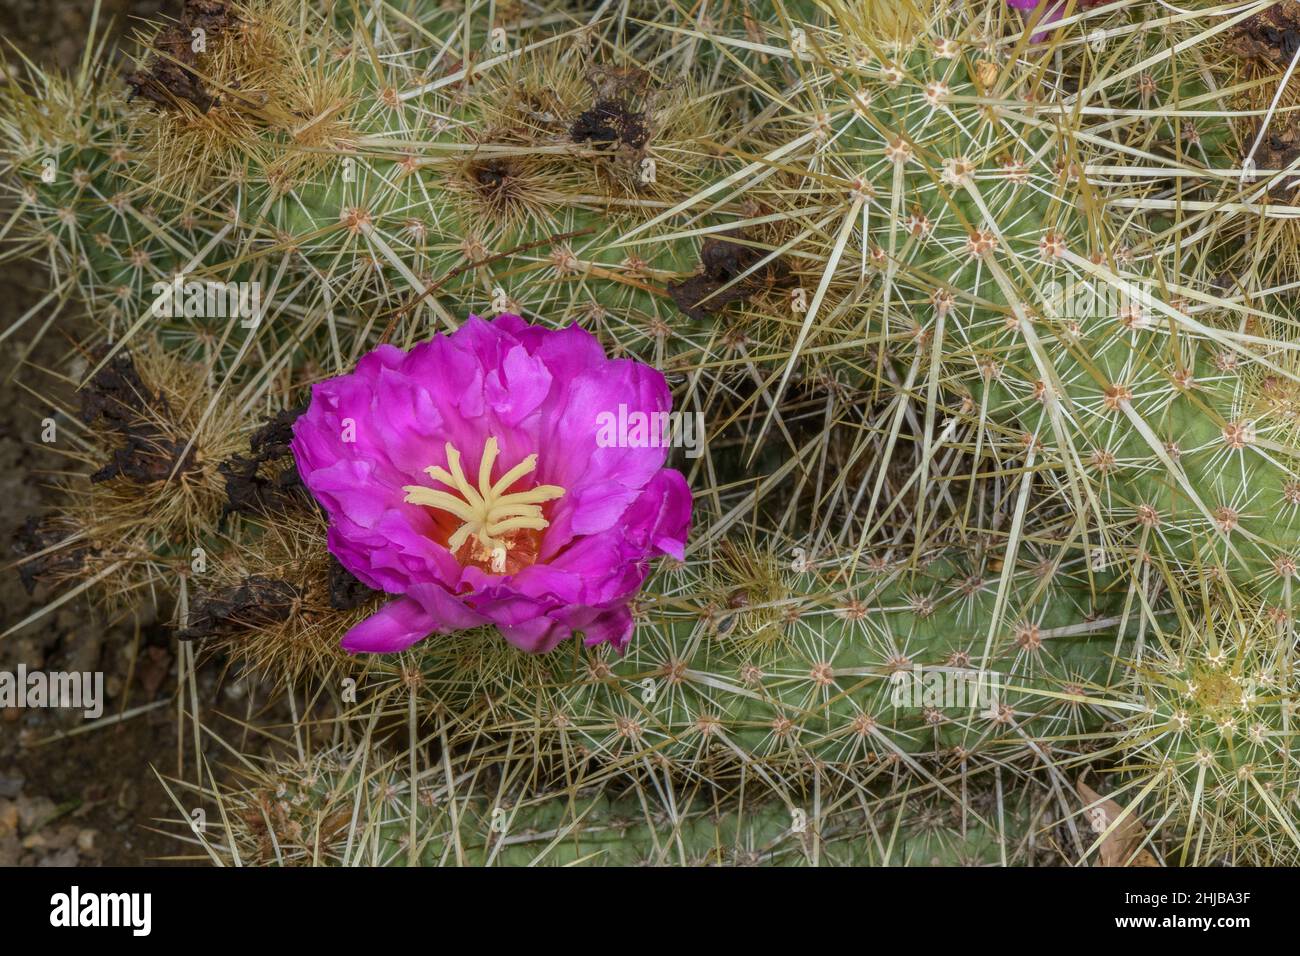 Strawberry Cactus, Echinocereus brandegeei, in flower, Mexico Stock Photo